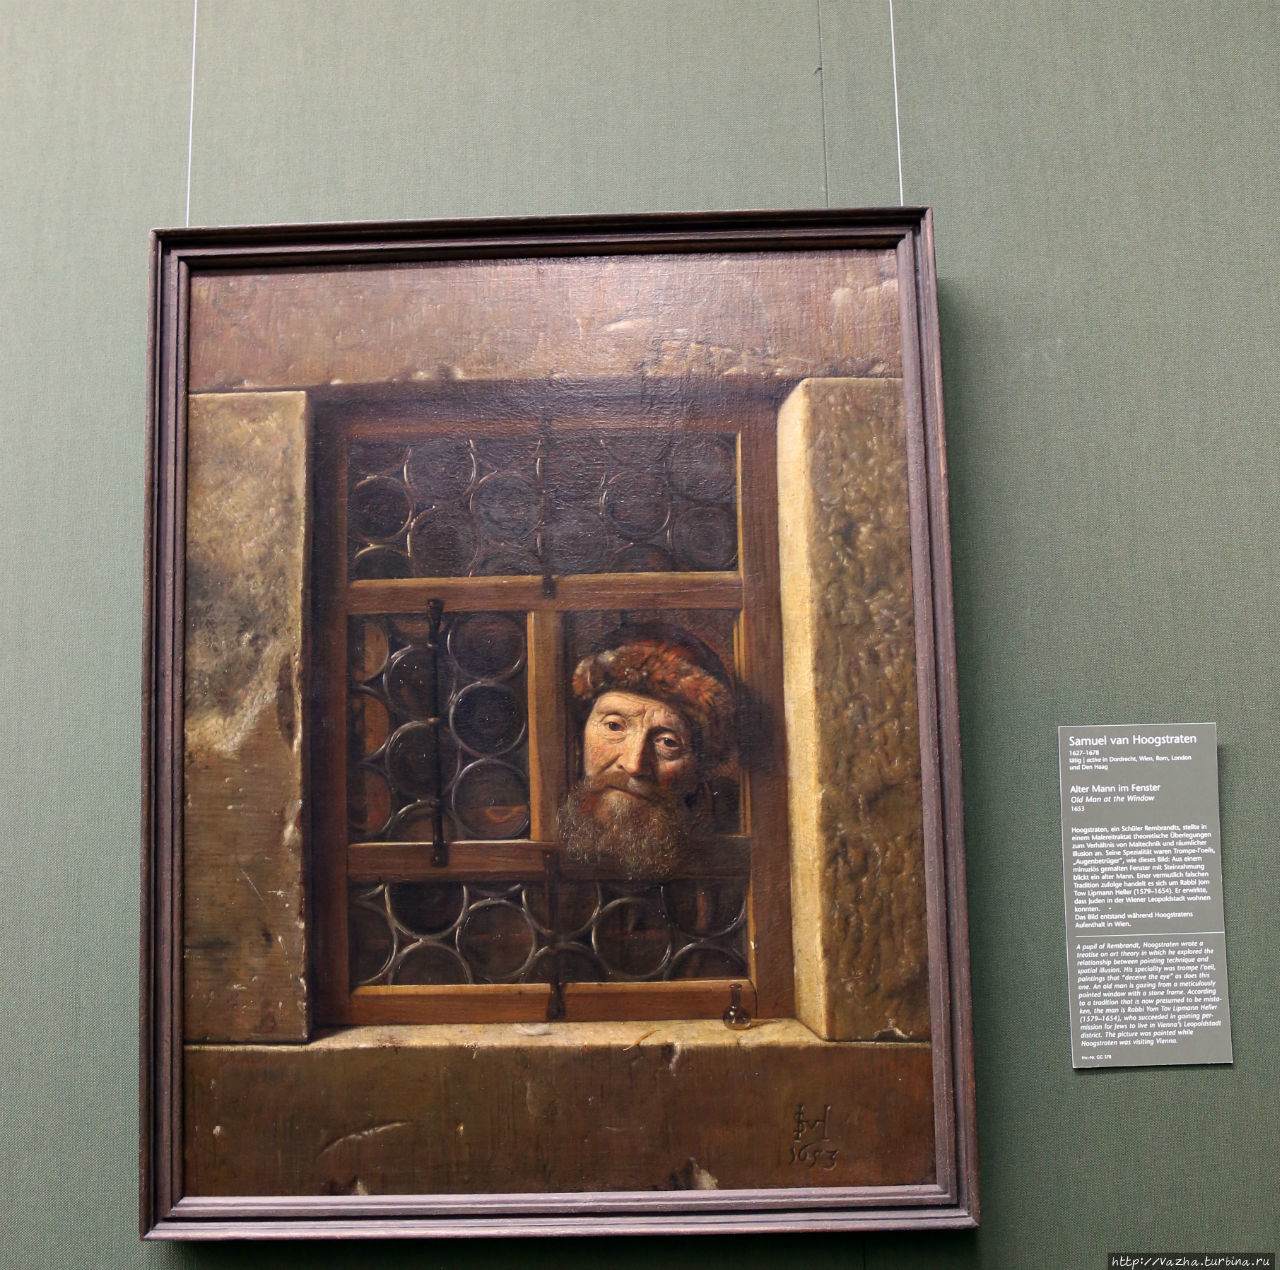 Самуэль ван Хоогстратен. Мужчина в окне Вена, Австрия